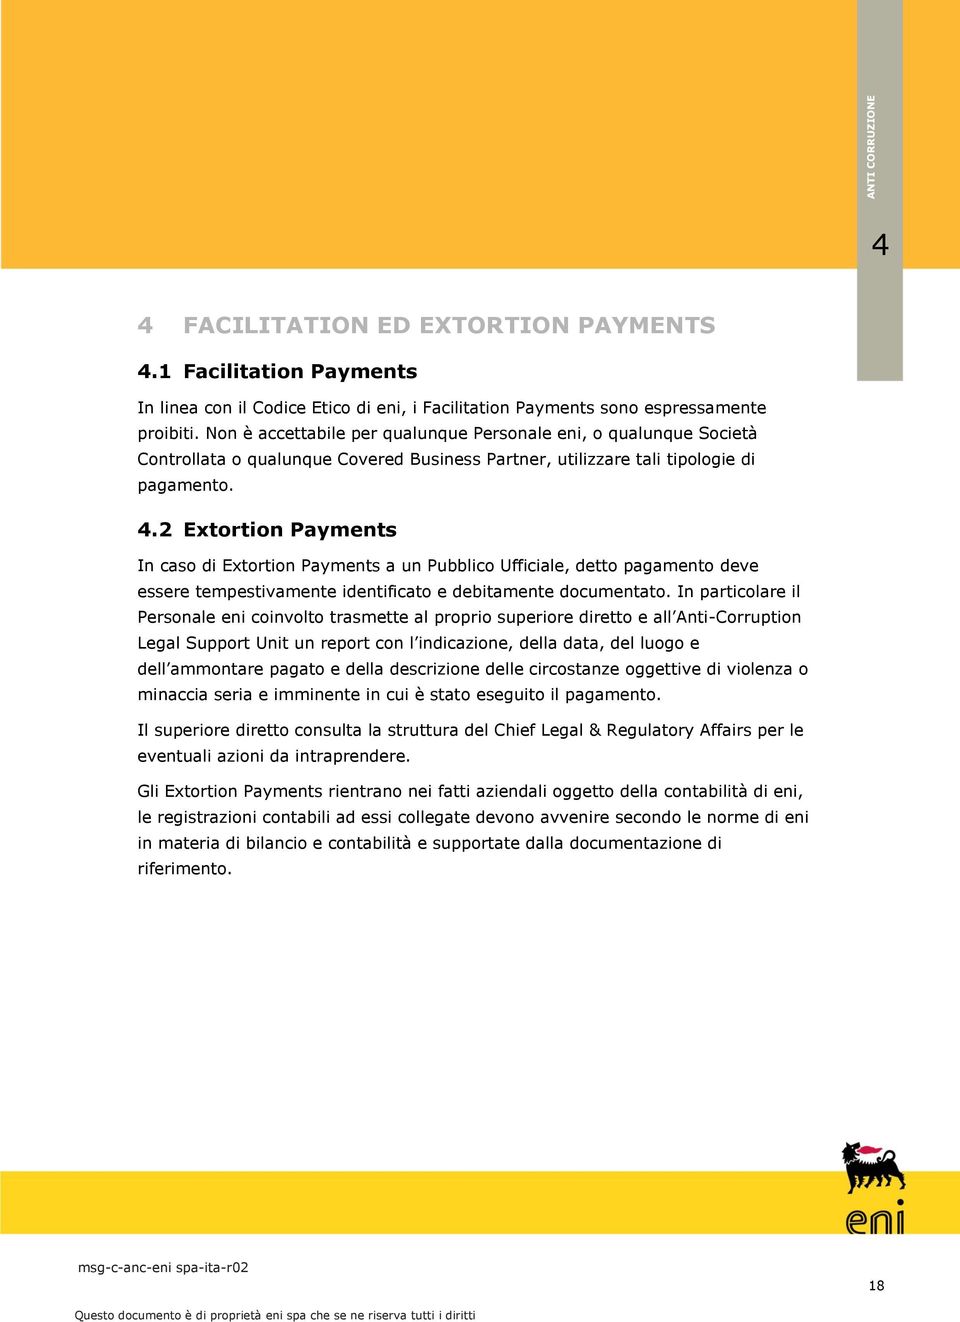 2 Extortion Payments In caso di Extortion Payments a un Pubblico Ufficiale, detto pagamento deve essere tempestivamente identificato e debitamente documentato.